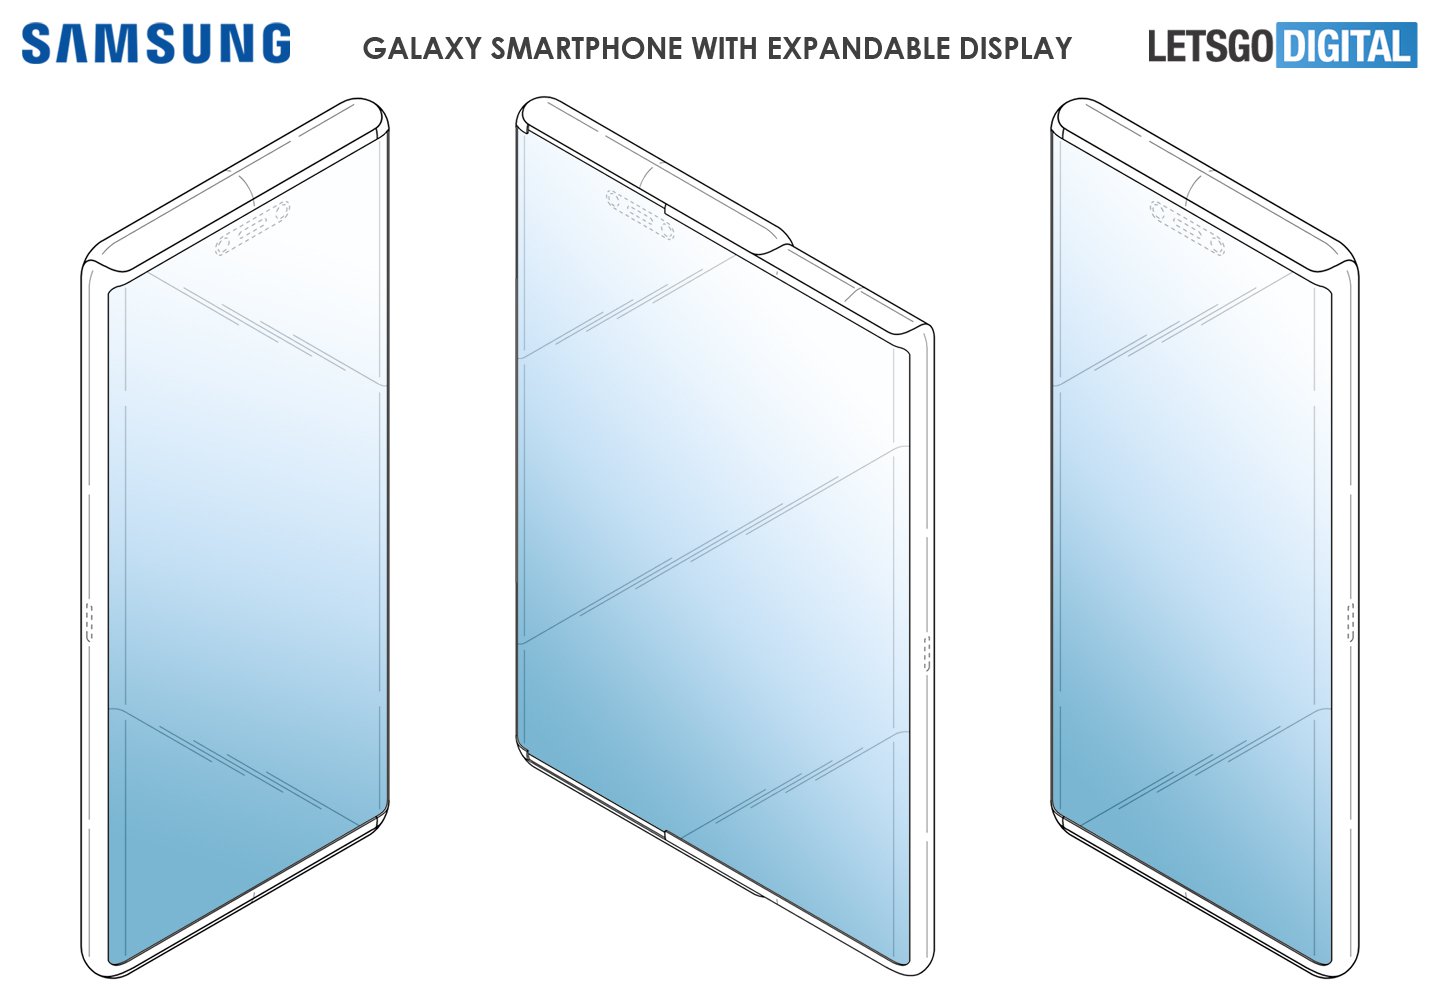 Samsung Mempatenkan Rekaan Skrin Yang Boleh Diperluaskan